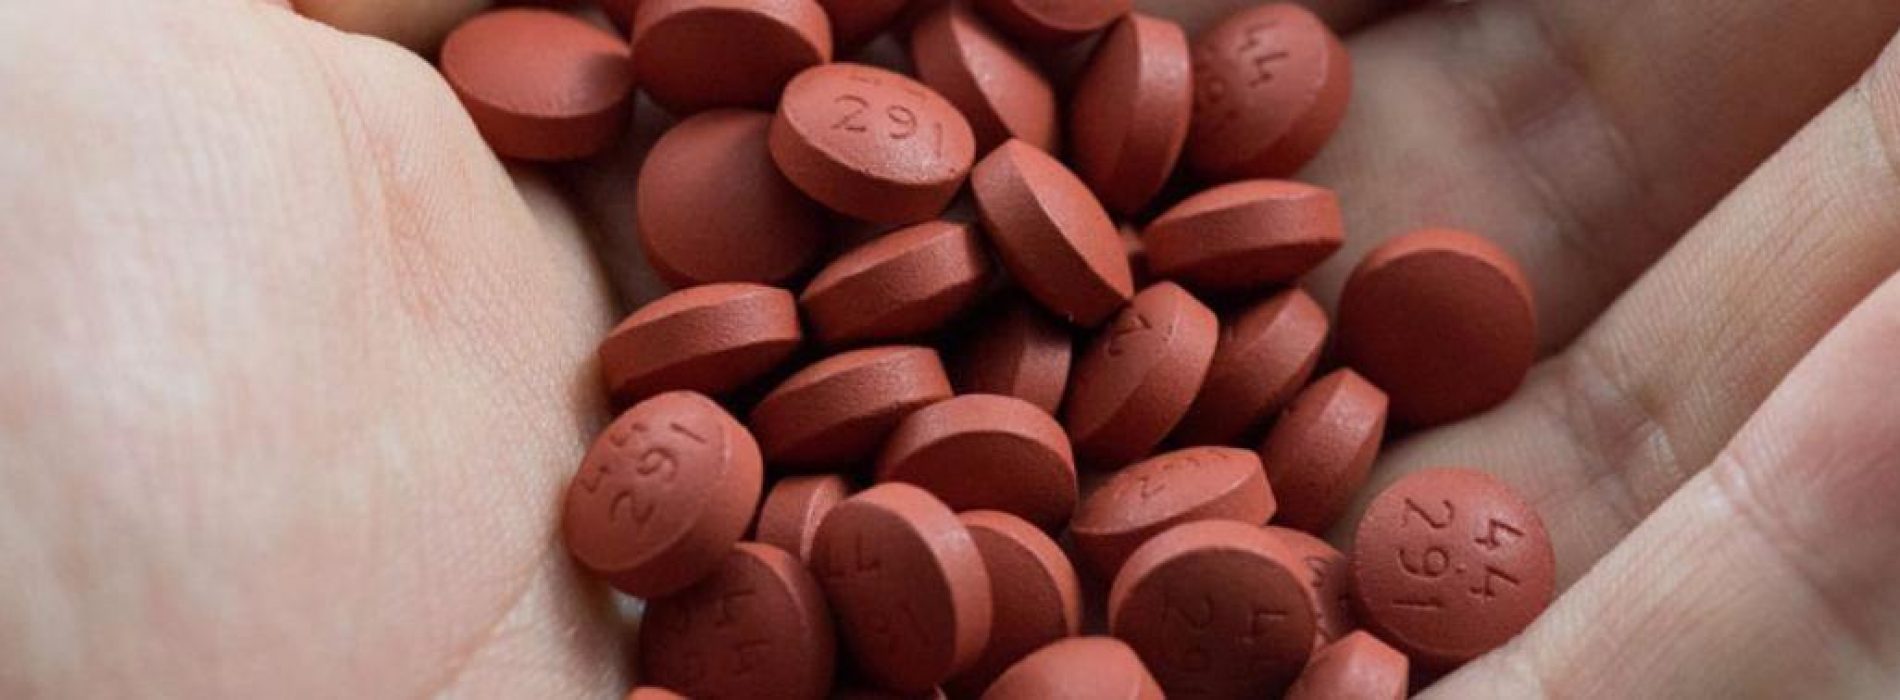 Zoals verzocht meer informatie over het gebruik van Ibuprofen – Het is schadelijk voor je hart